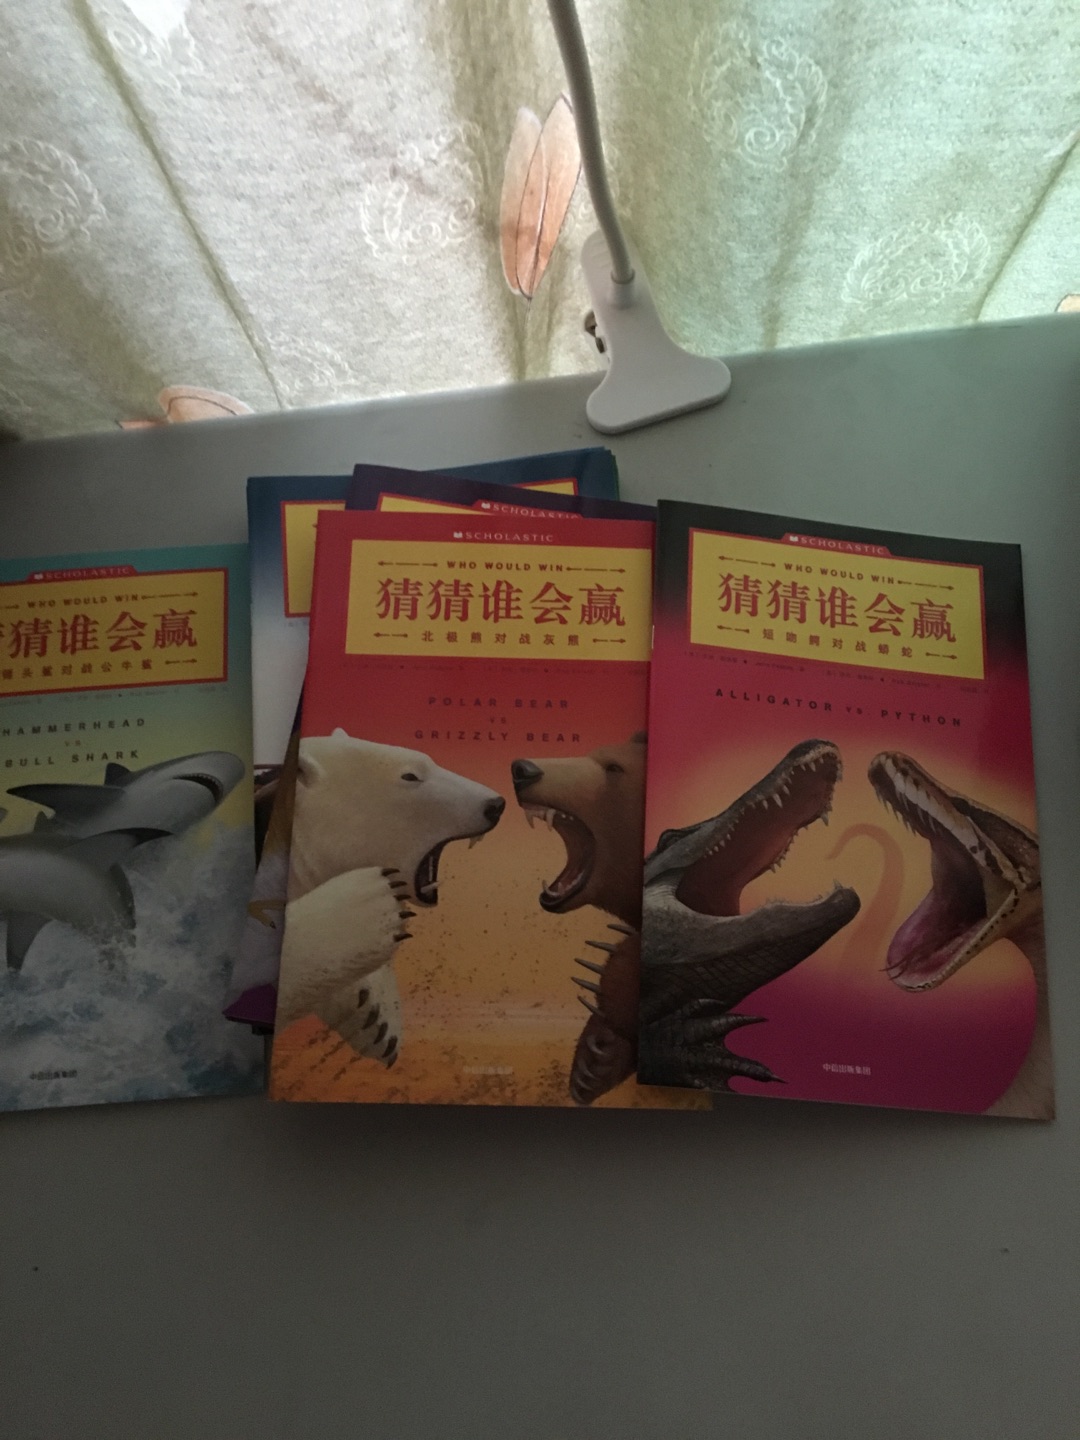 同事推荐的一套书，我们家娃非常喜欢恐龙，昨天看到书很兴奋，洗完澡就在床上翻起书来！